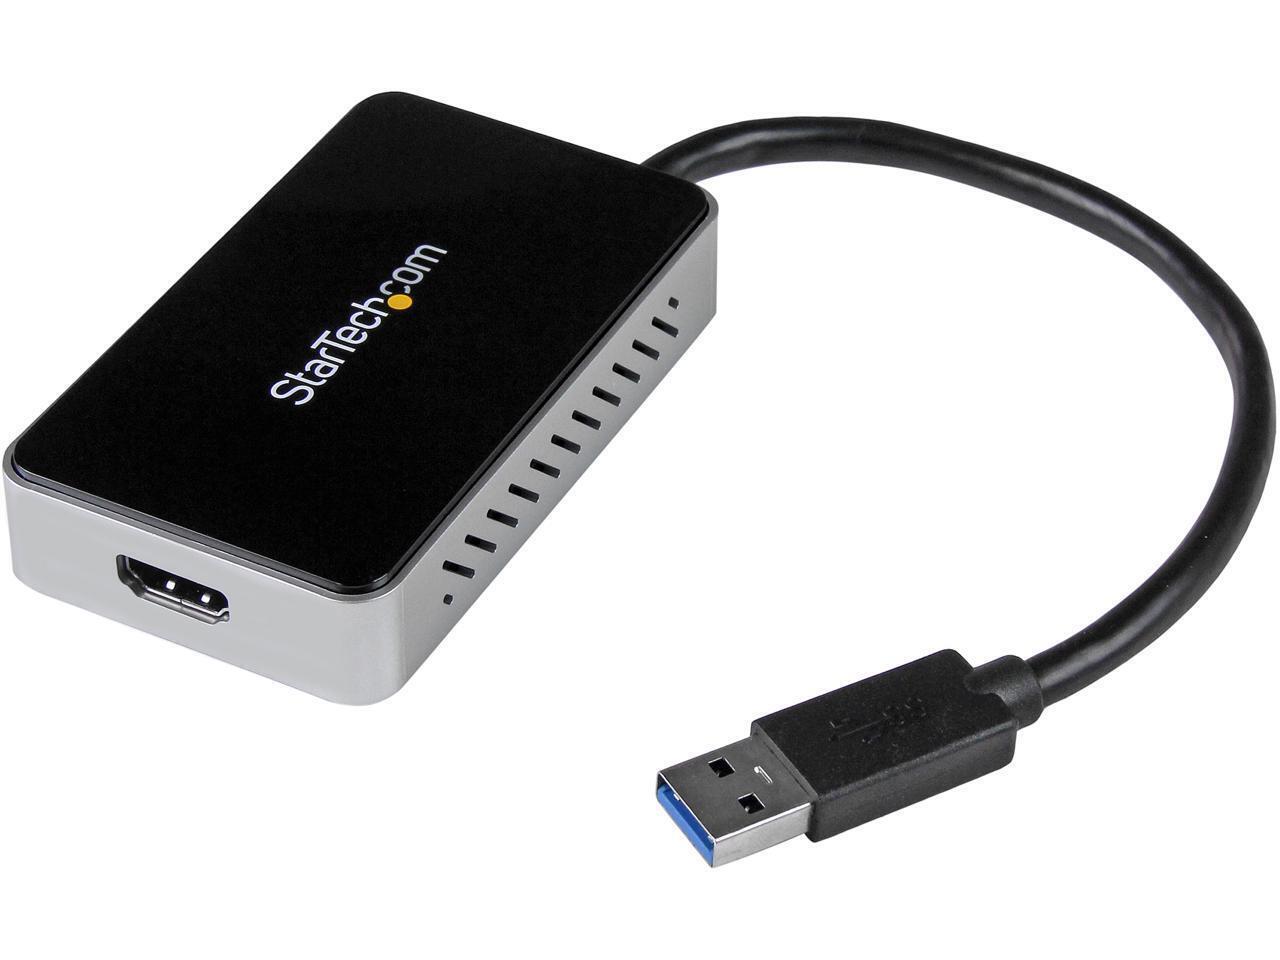 StarTech.com USB32HDEH USB 3.0 to HDMI External Video Card Adapter - 1 Port USB